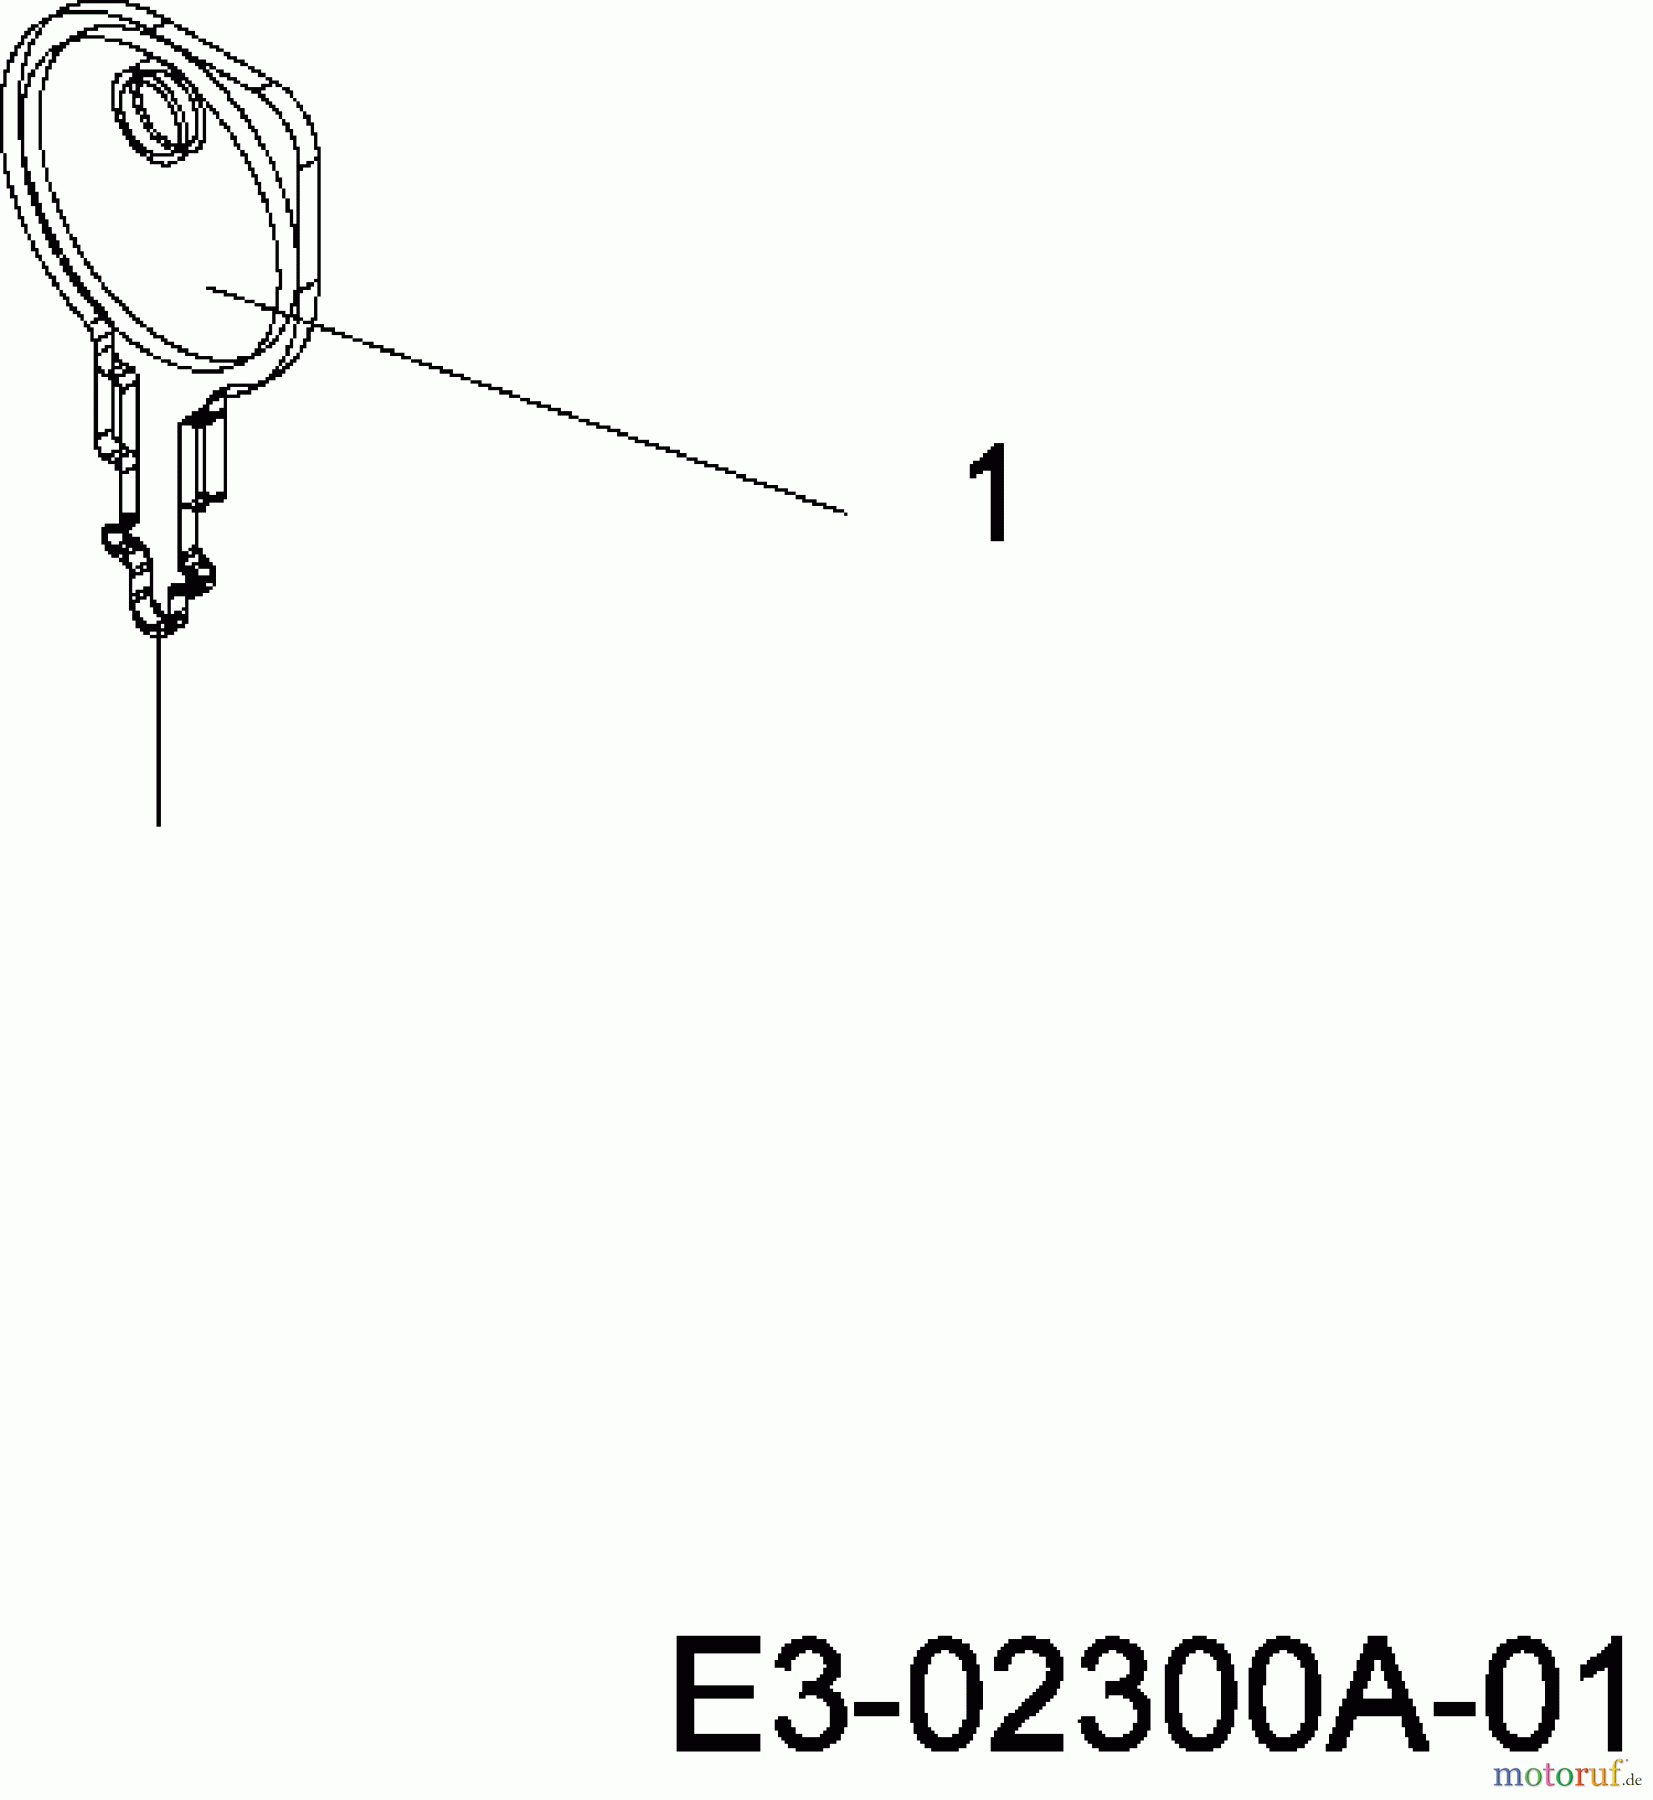  MTD Rasentraktoren RH 115/76 13D1452C670  (2007) Zündschlüssel